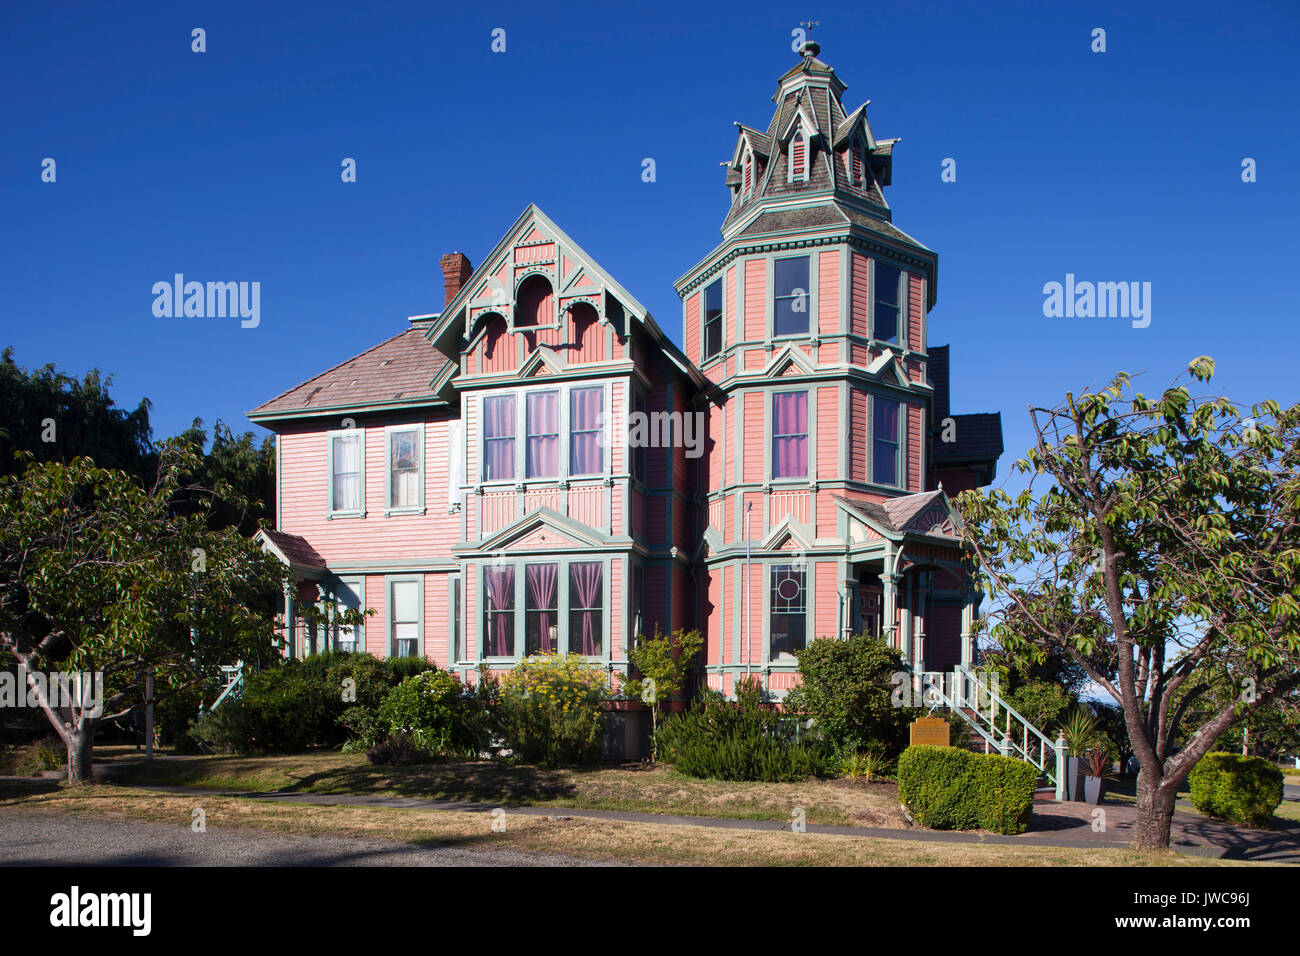 George Starret house (1889), la maison Victorienne, maintenant Ann Starrett Mansion boutique hotel, Port Townsend, État de Washington, USA, Amérique Latine Banque D'Images